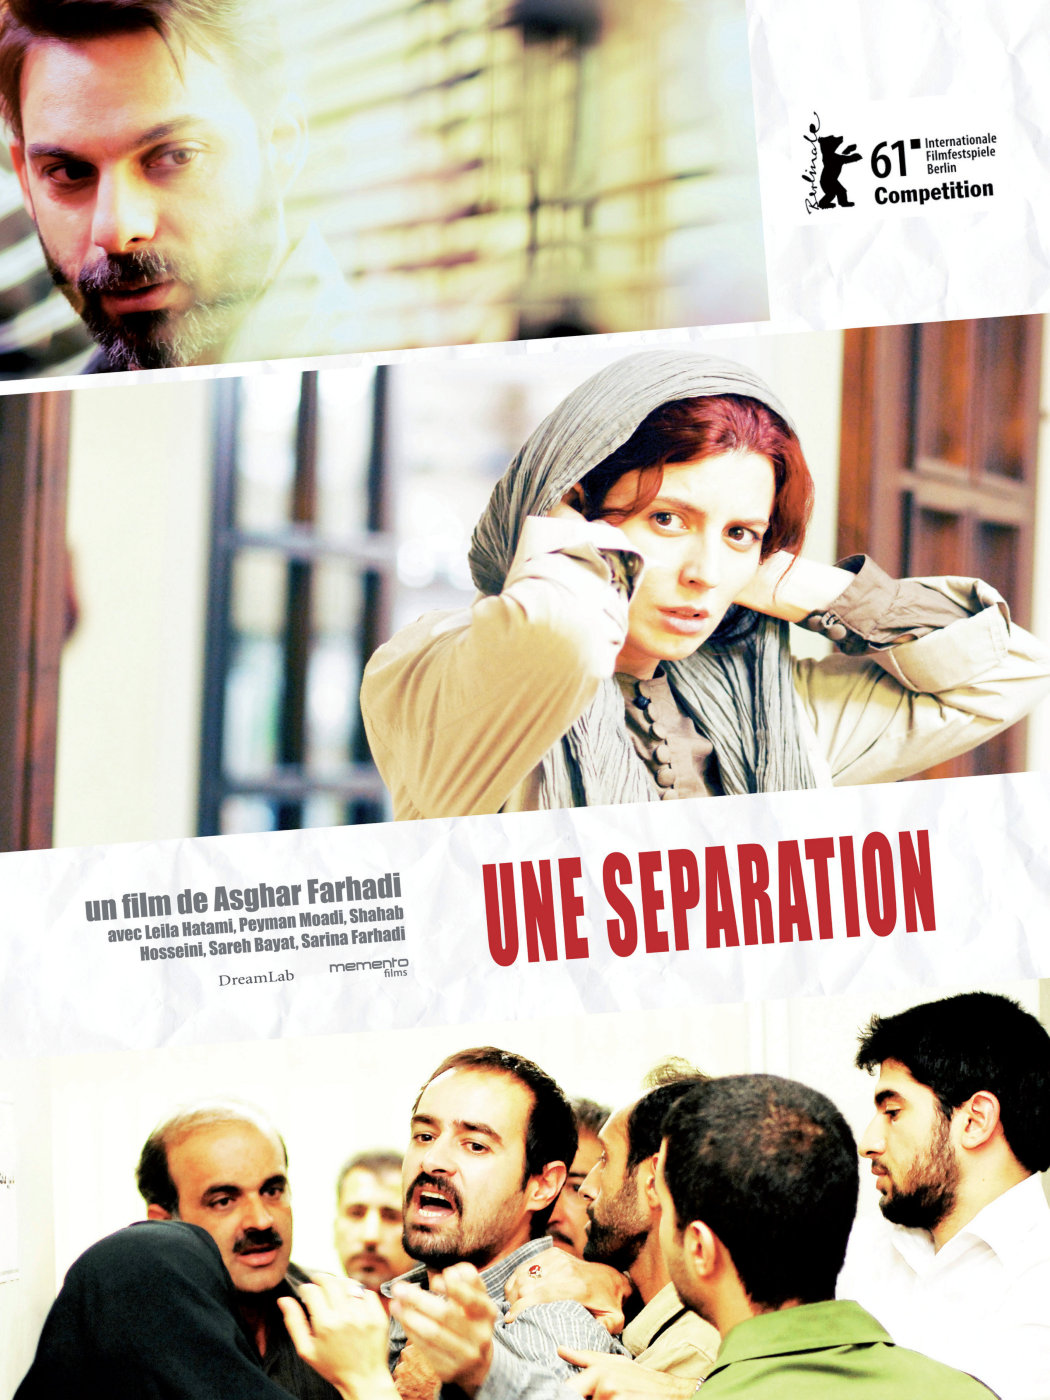 9- A Separation (Asghar Farhadi, 2011)